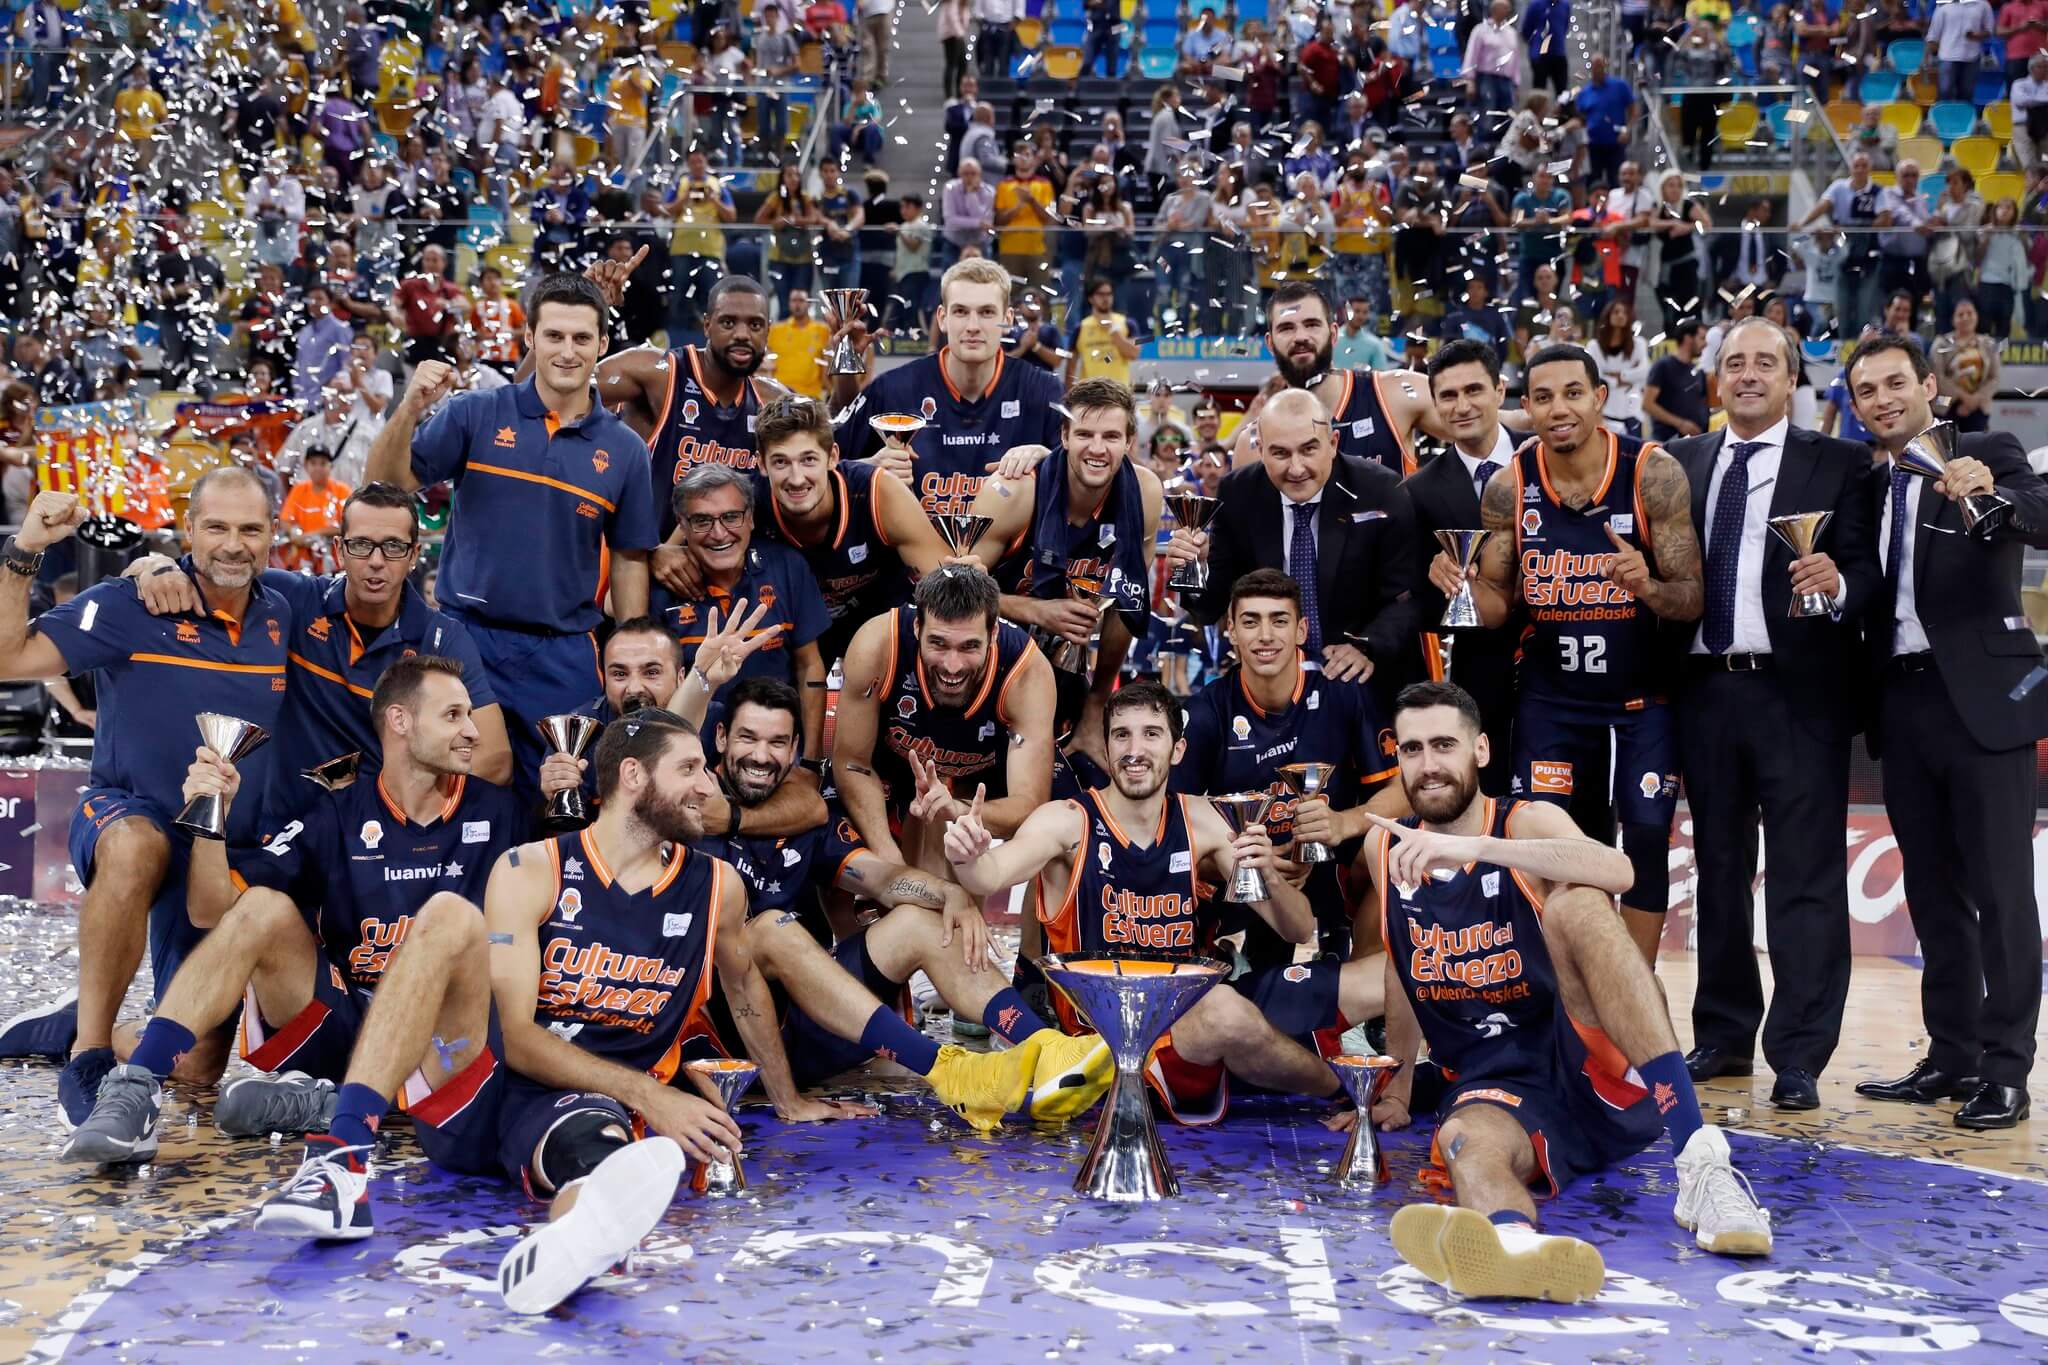 Valencia Basket – самый известный и титулованный клуб города. Он  успешно выступает в национальном чемпионате Liga ACB (la Liga Endesa) и Евролиге.